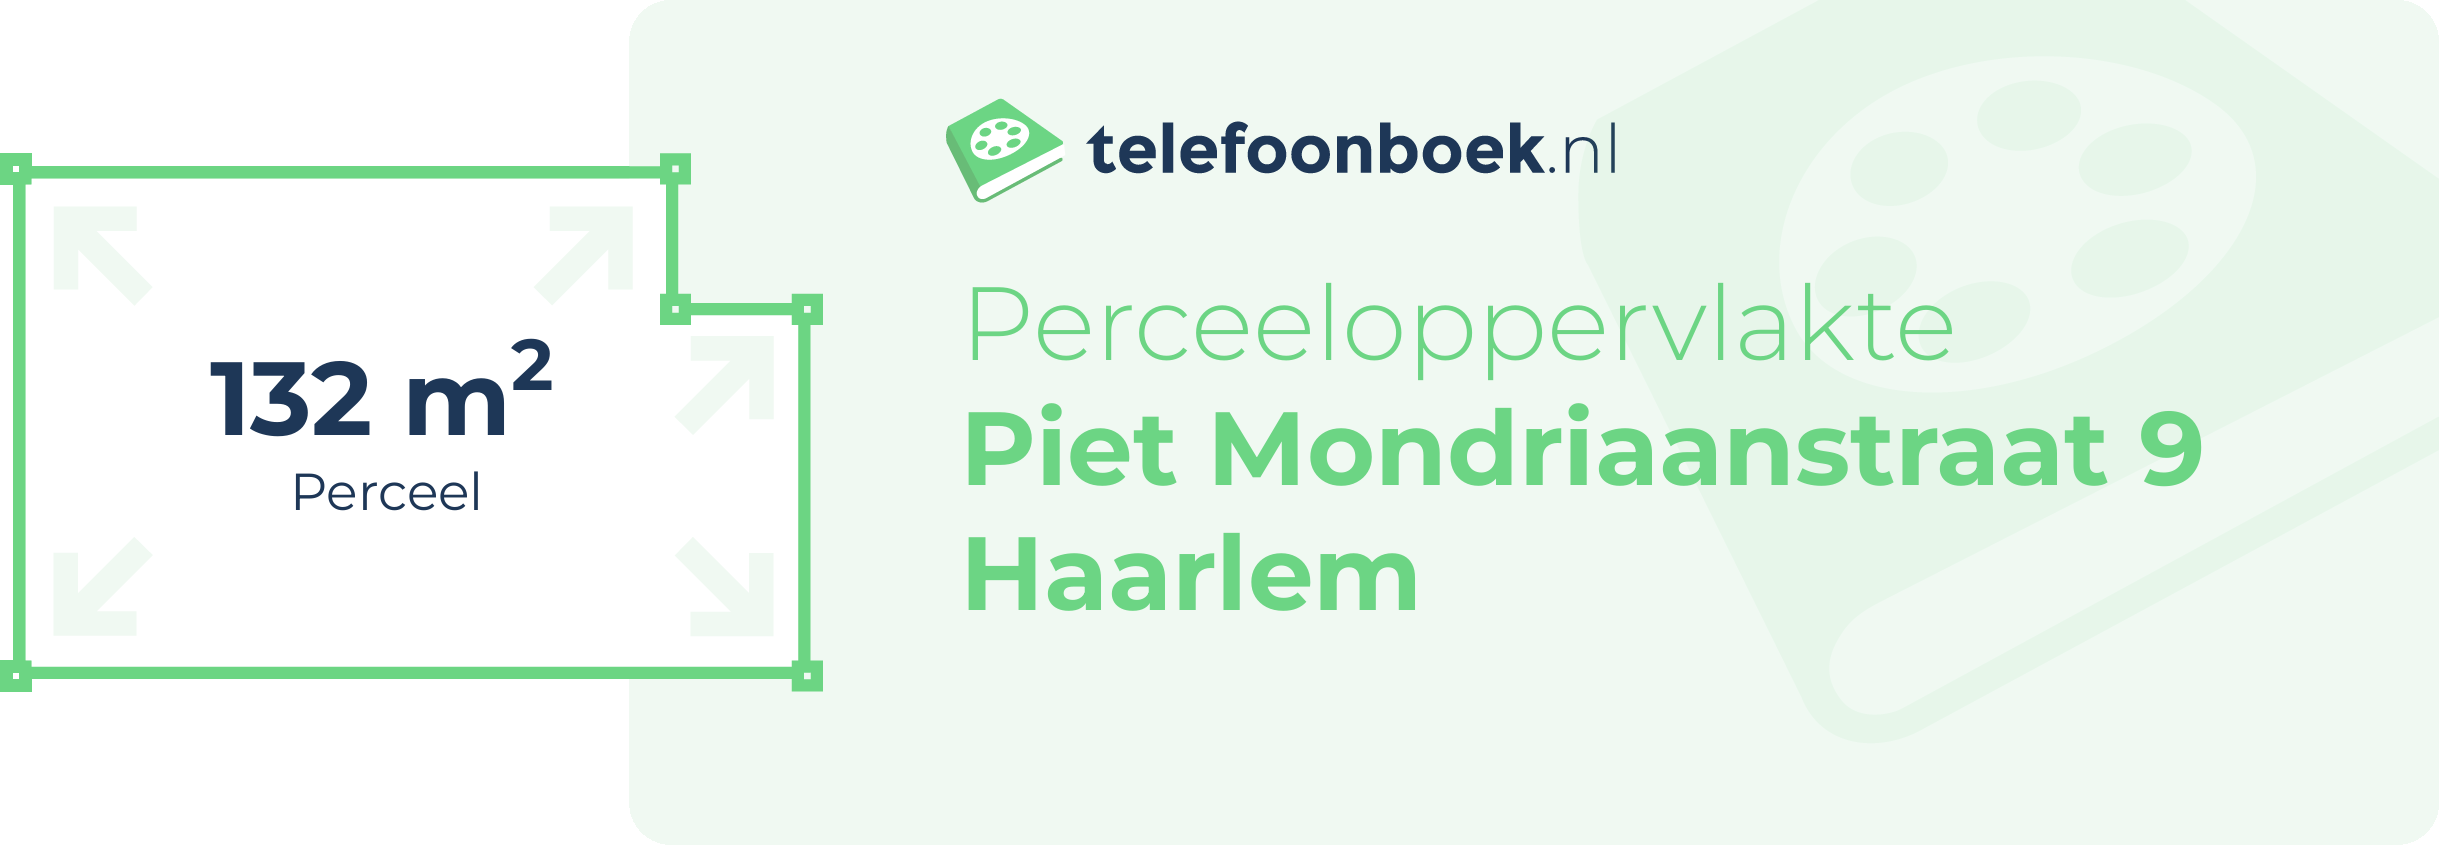 Perceeloppervlakte Piet Mondriaanstraat 9 Haarlem